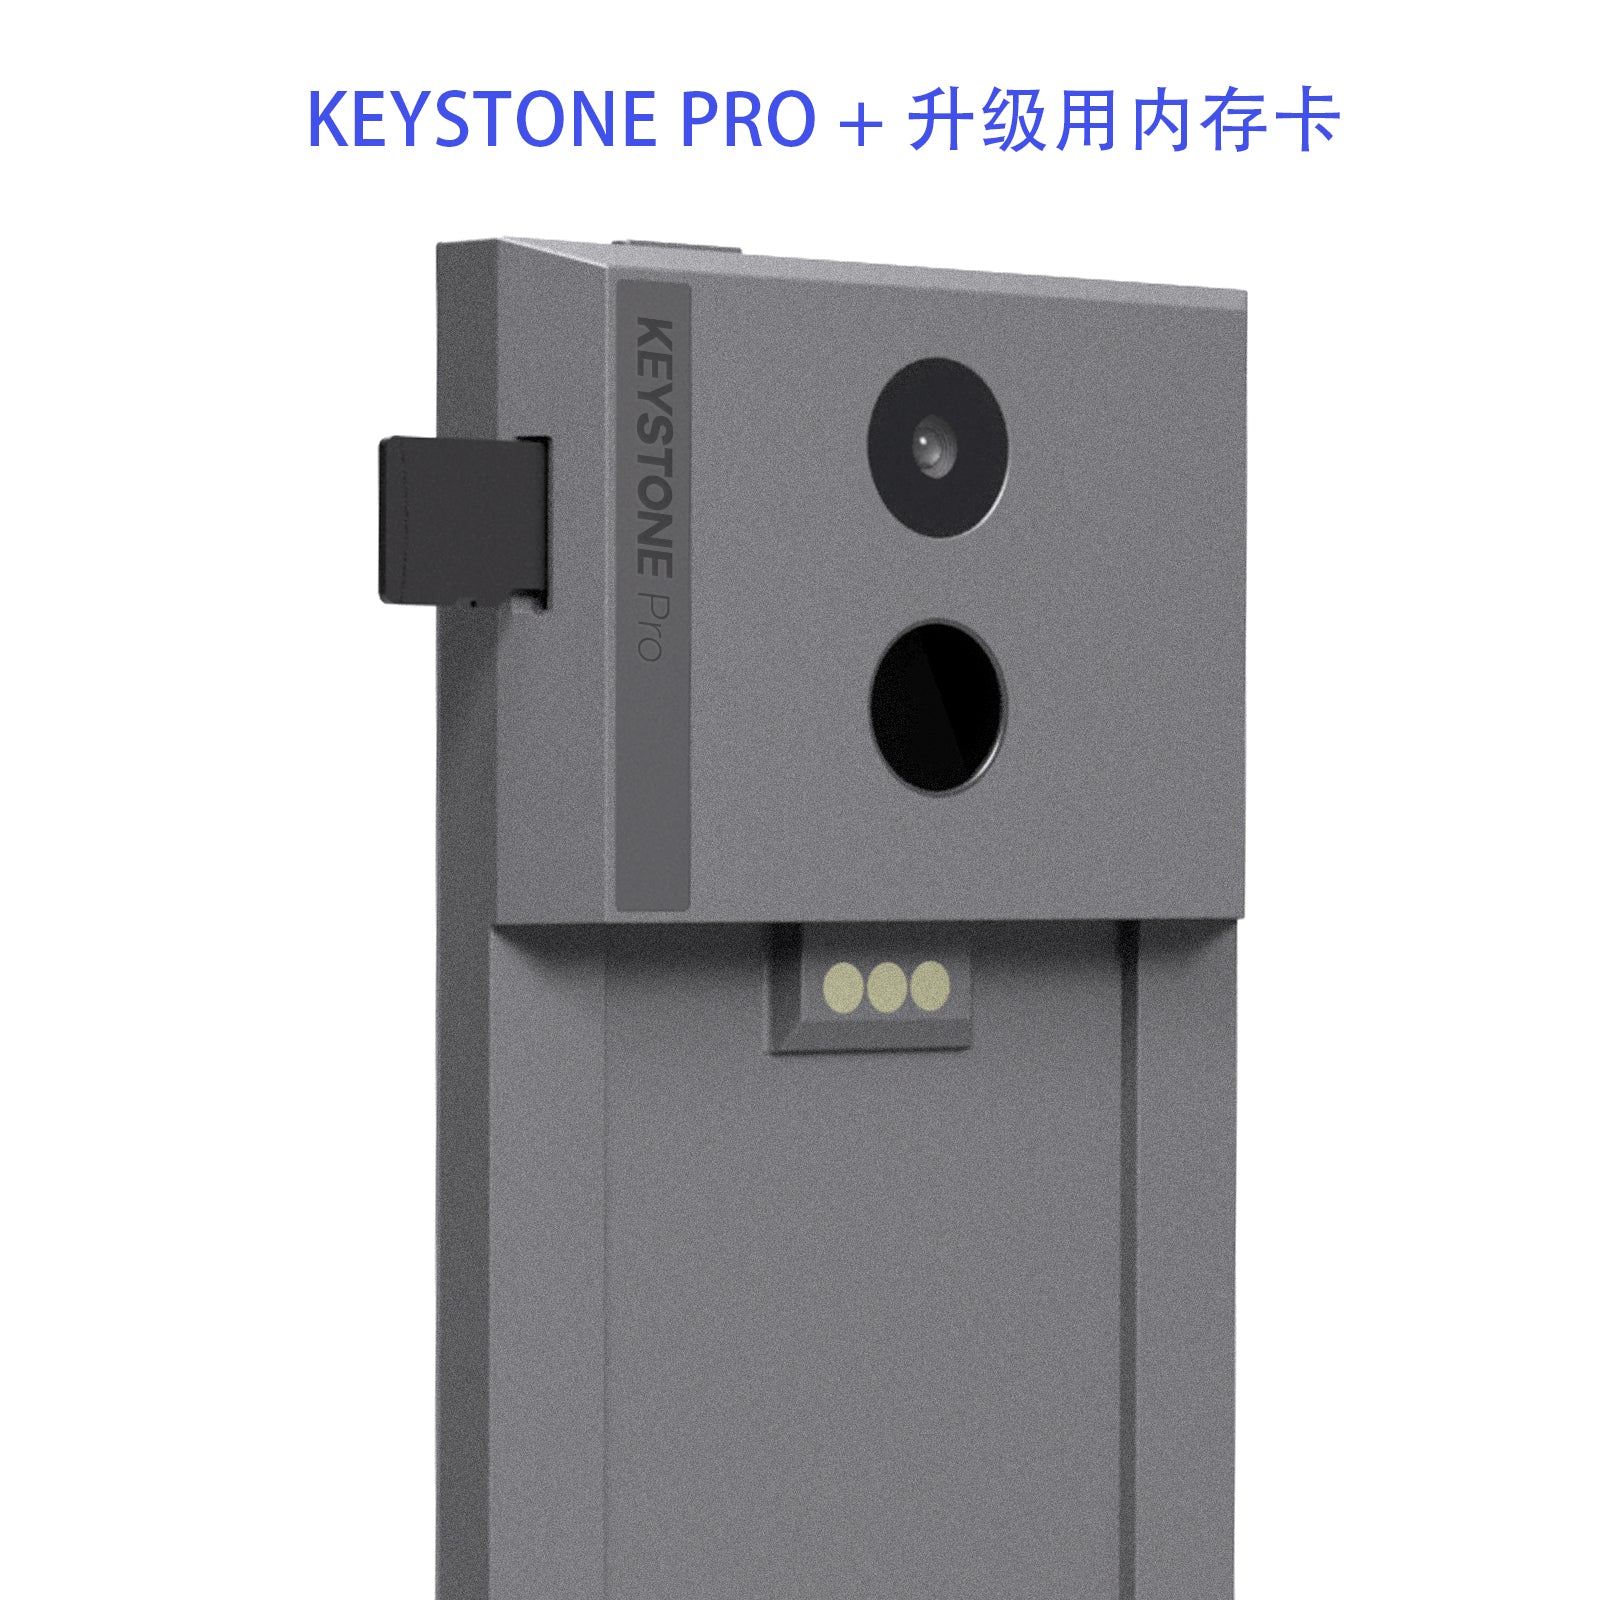 Keystone硬件钱包 metamask小狐狸钱包官方硬件合作伙伴 铠石Pro版冷钱包